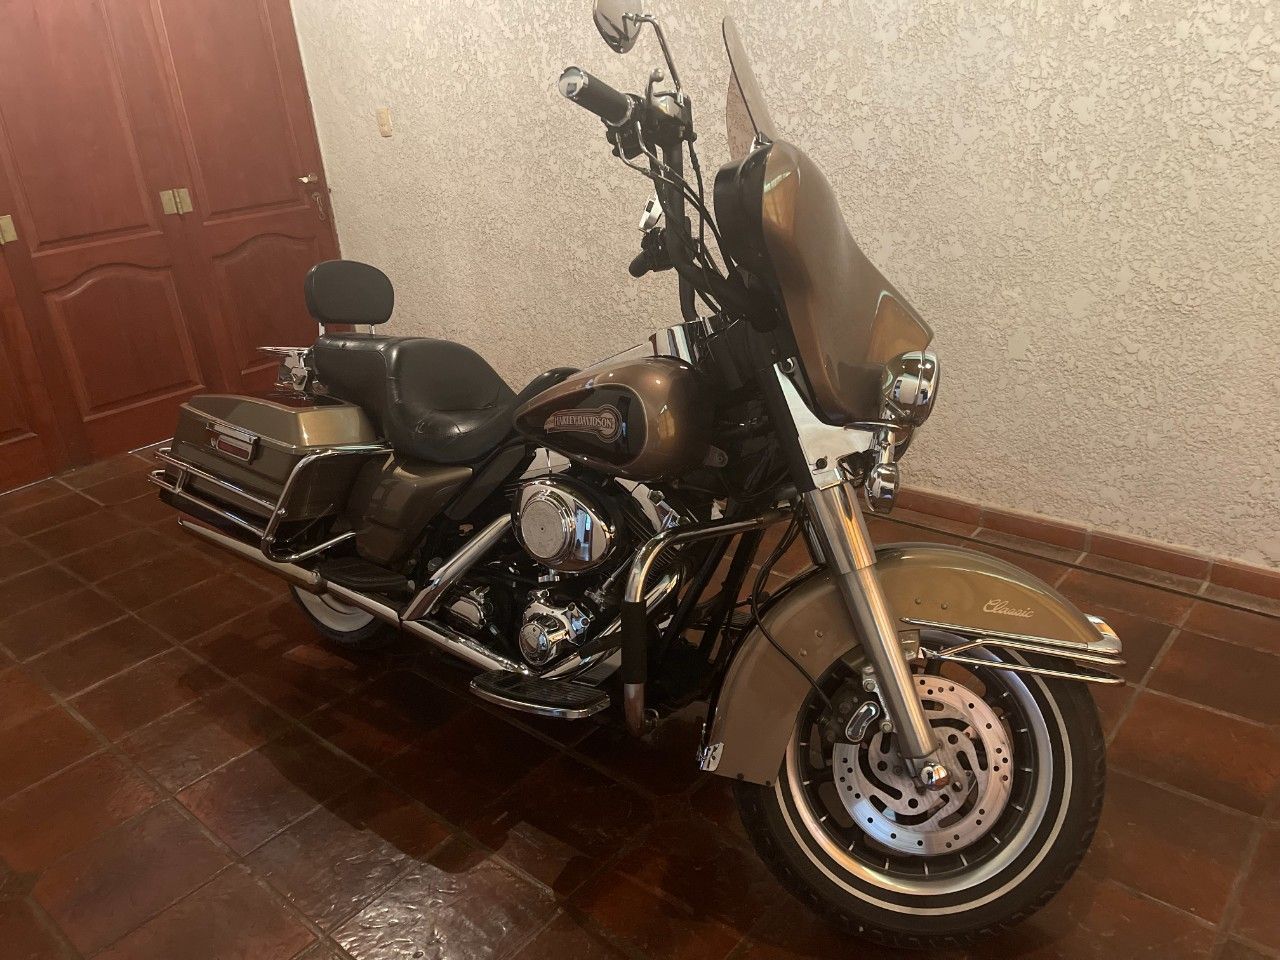 Harley Davidson Electra Glide Usada en Mendoza, deRuedas